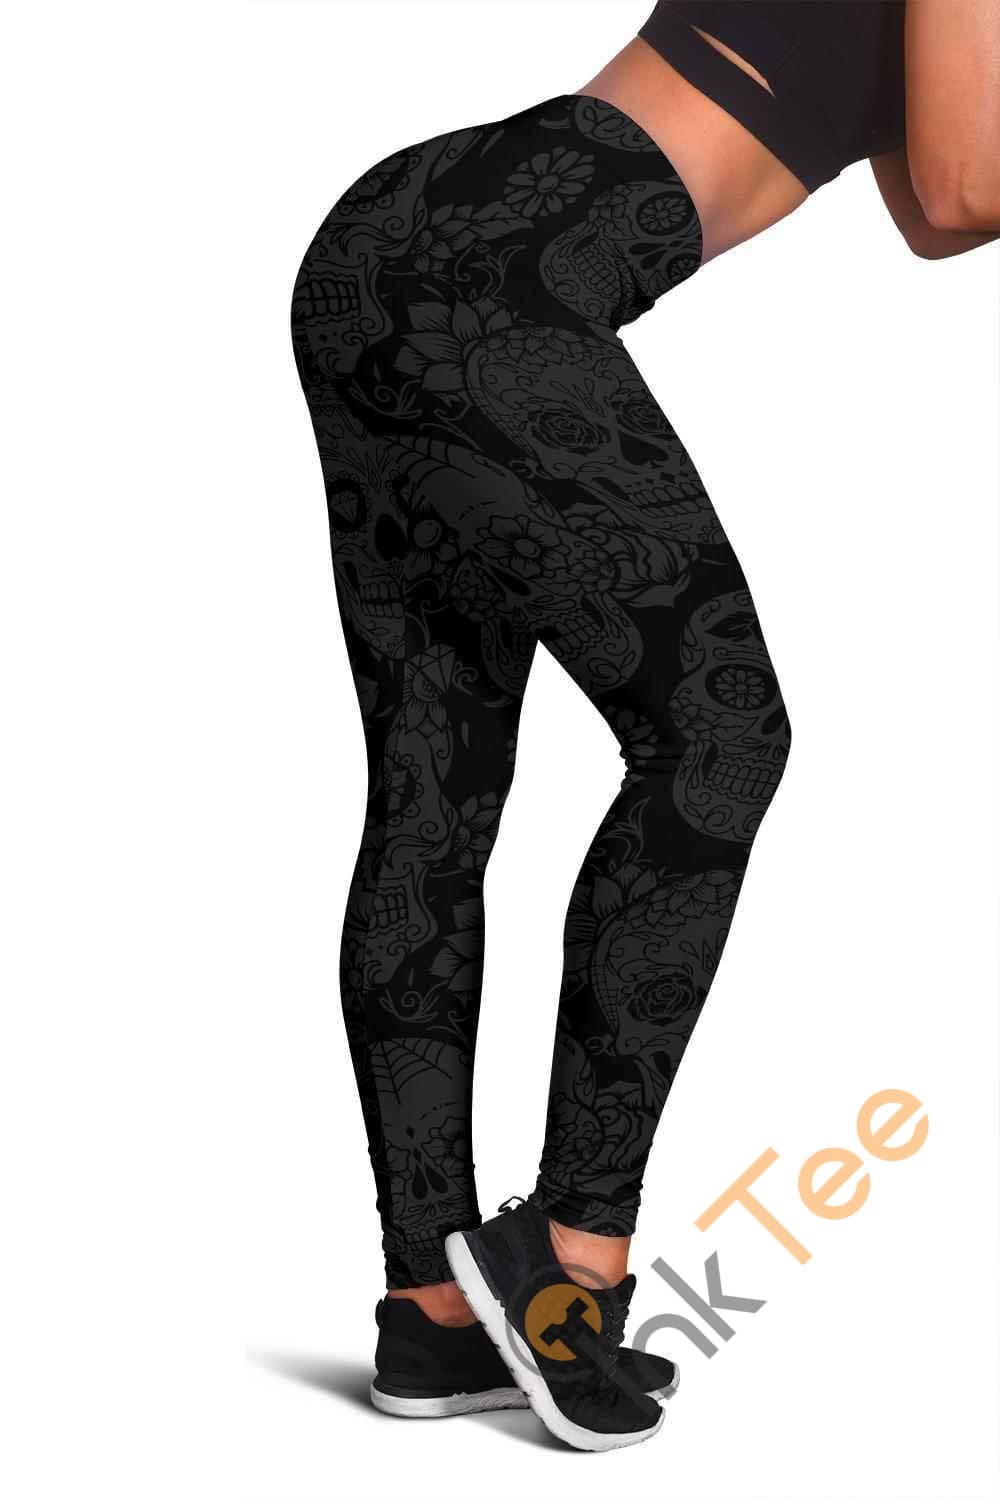 Inktee Store - Dark Skull 3D All Over Print For Yoga Fitness Women'S Leggings Image